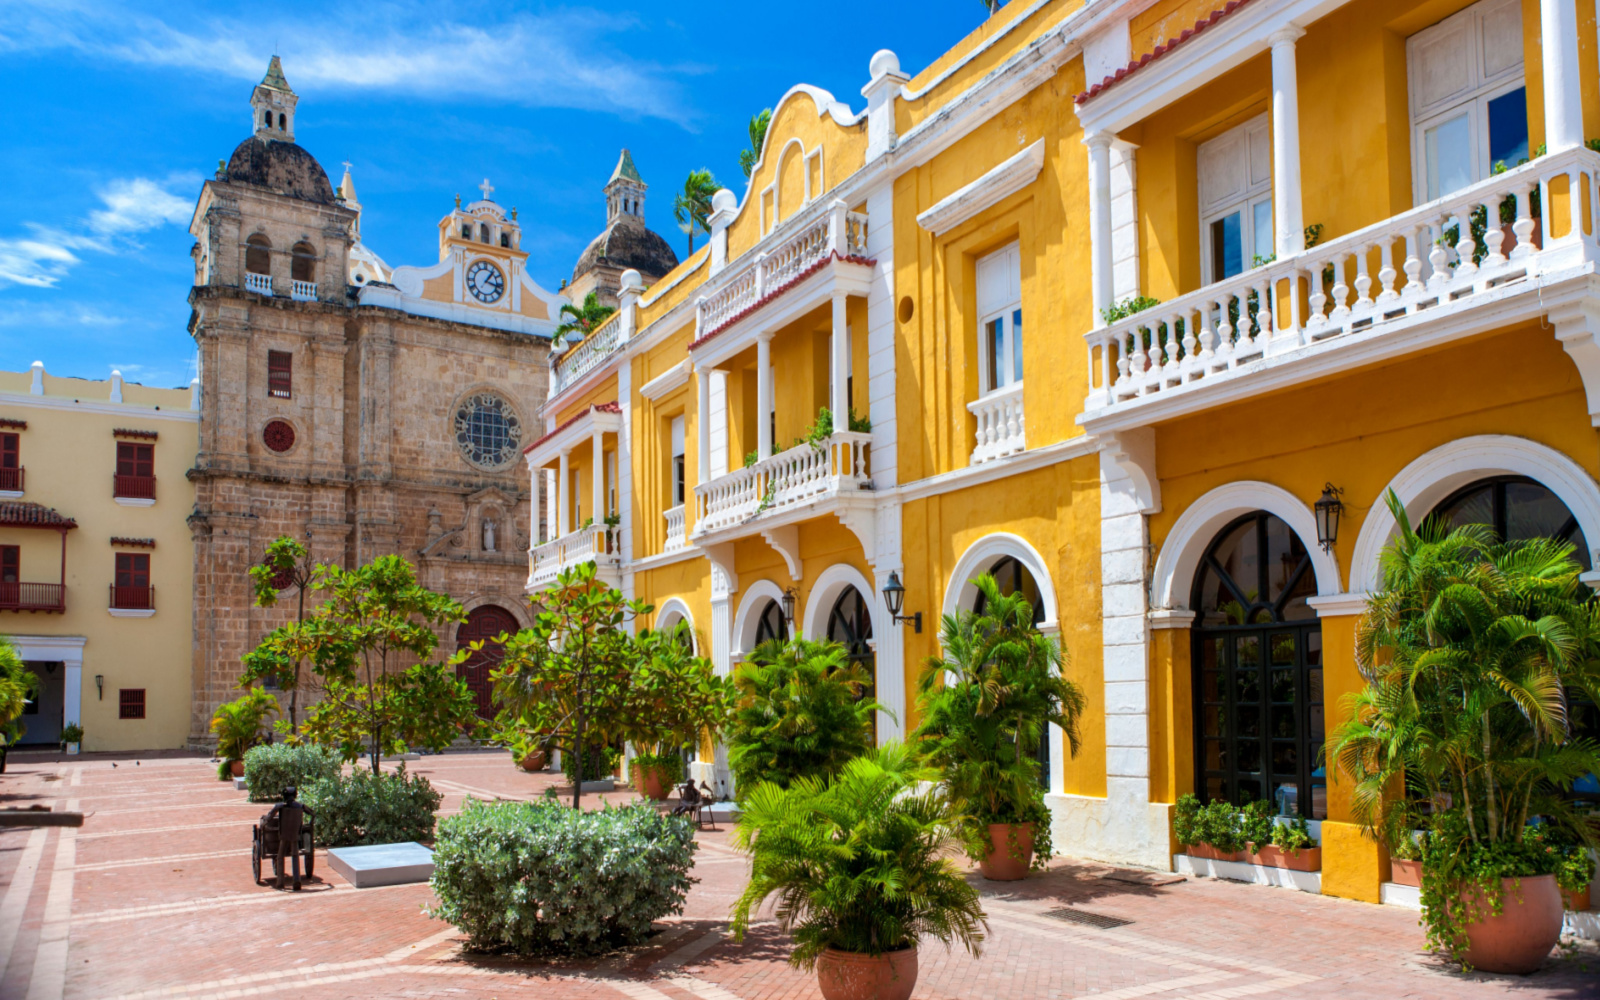 Is Cartagena Safe? | Travel Tips & Safety Concerns